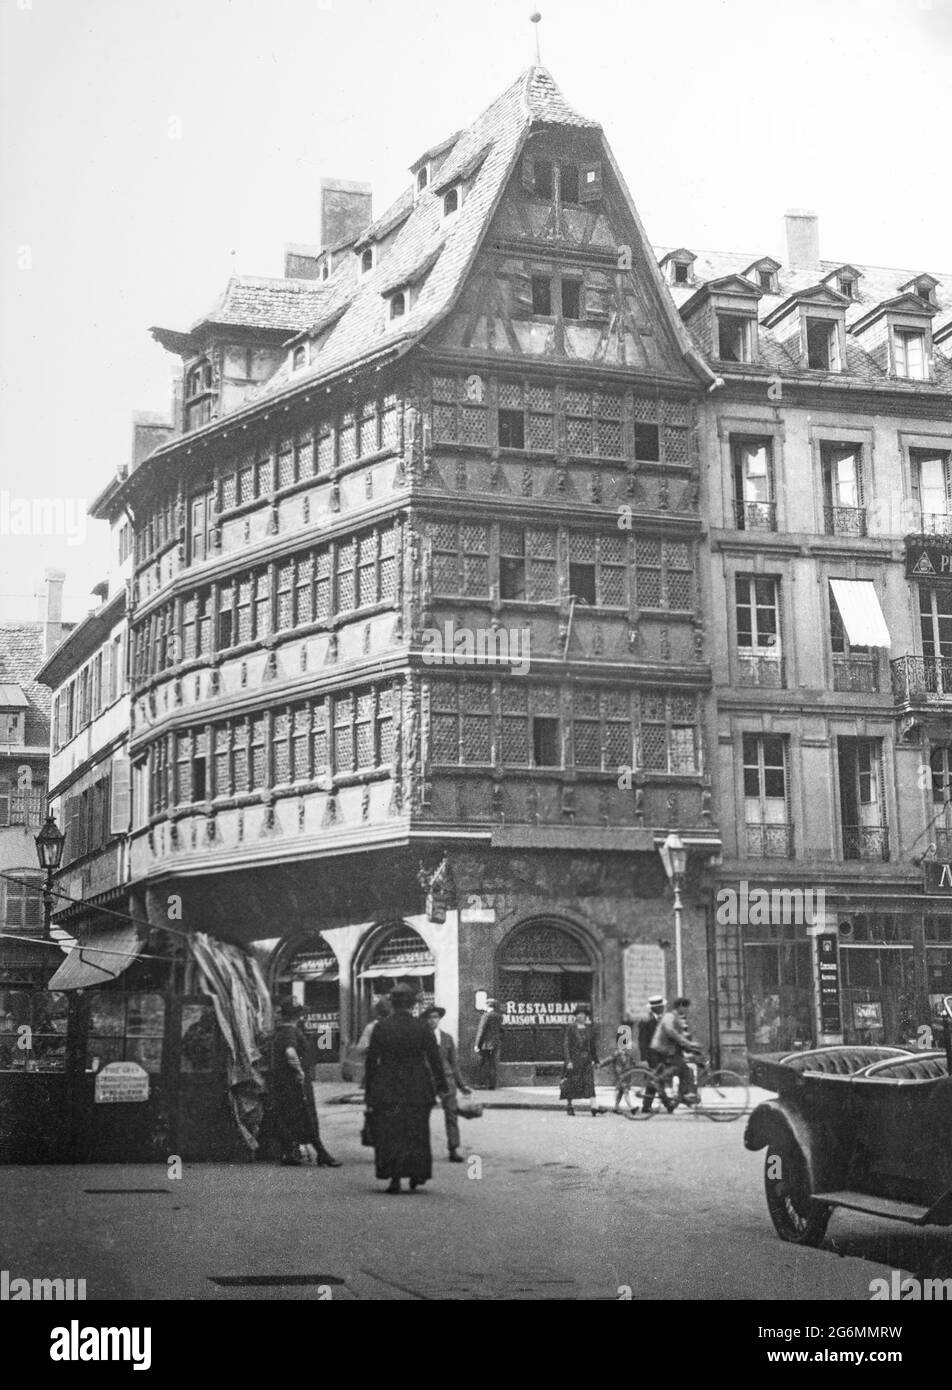 Altes Schwarzweiß-Foto aus dem frühen 20. Jahrhundert, aufgenommen in Straßburg, Frankreich. Das Bild zeigt Gebäude und Menschen aus der Zeit. Stockfoto